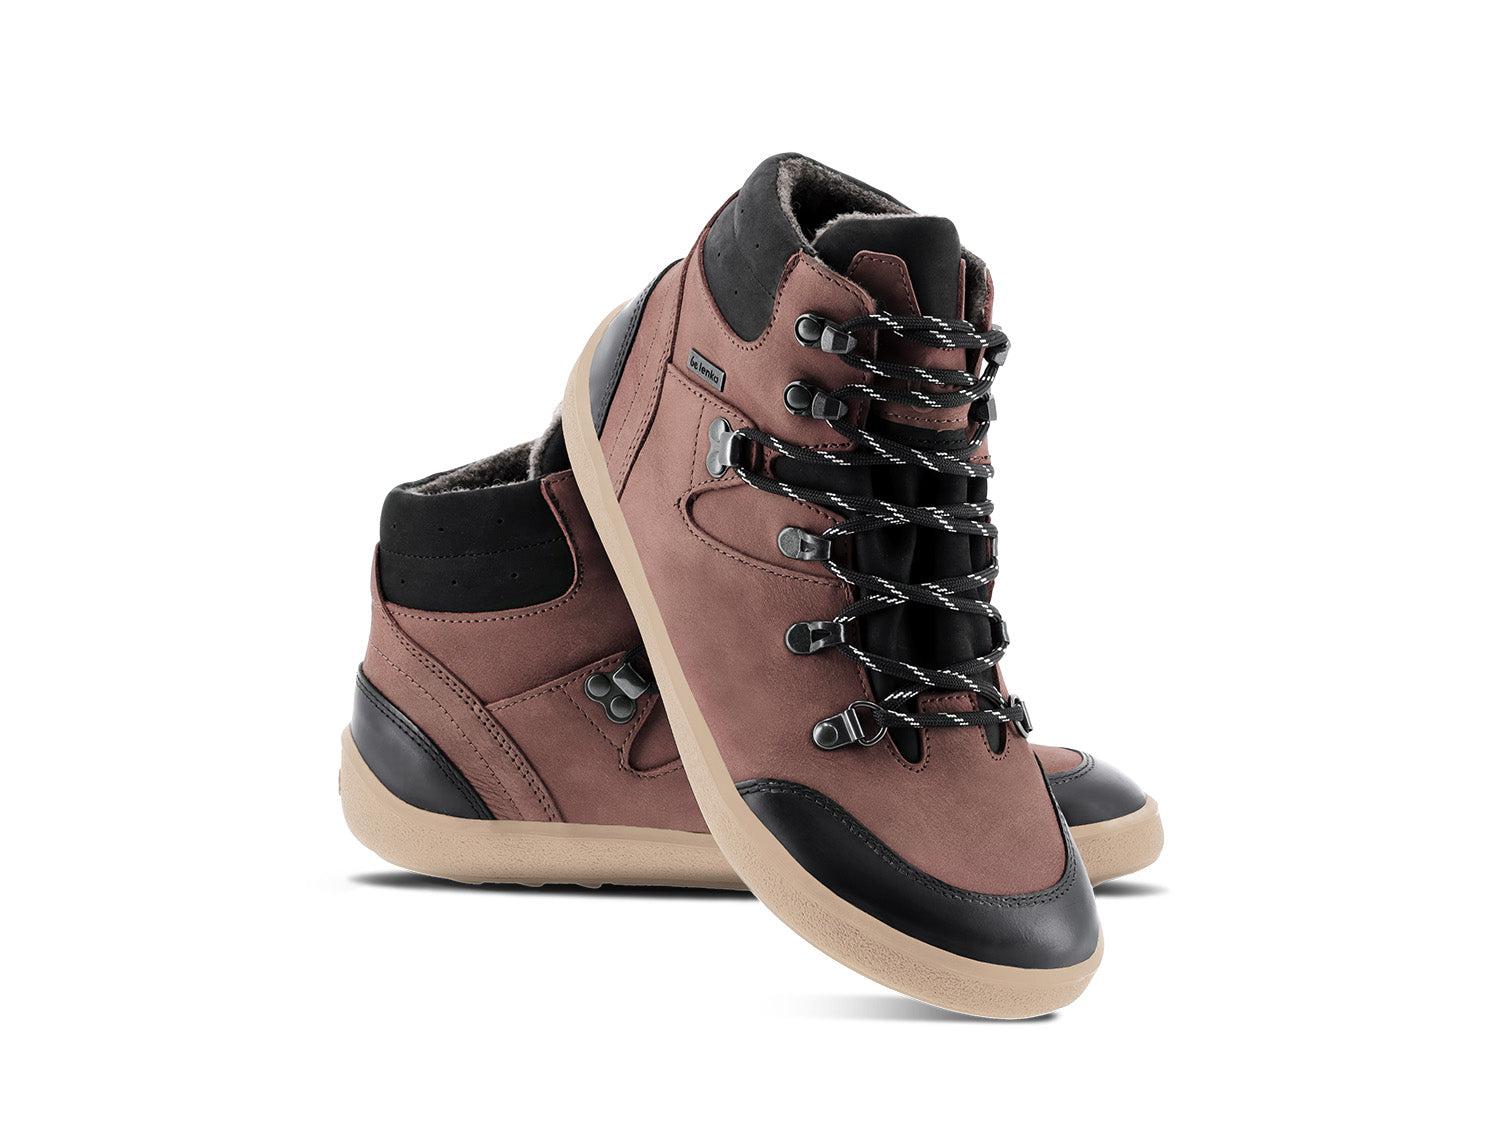 Barefoot Shoes Be Lenka Ranger 2.0 - Dark Brown-Be Lenka-Cacles Barefoot